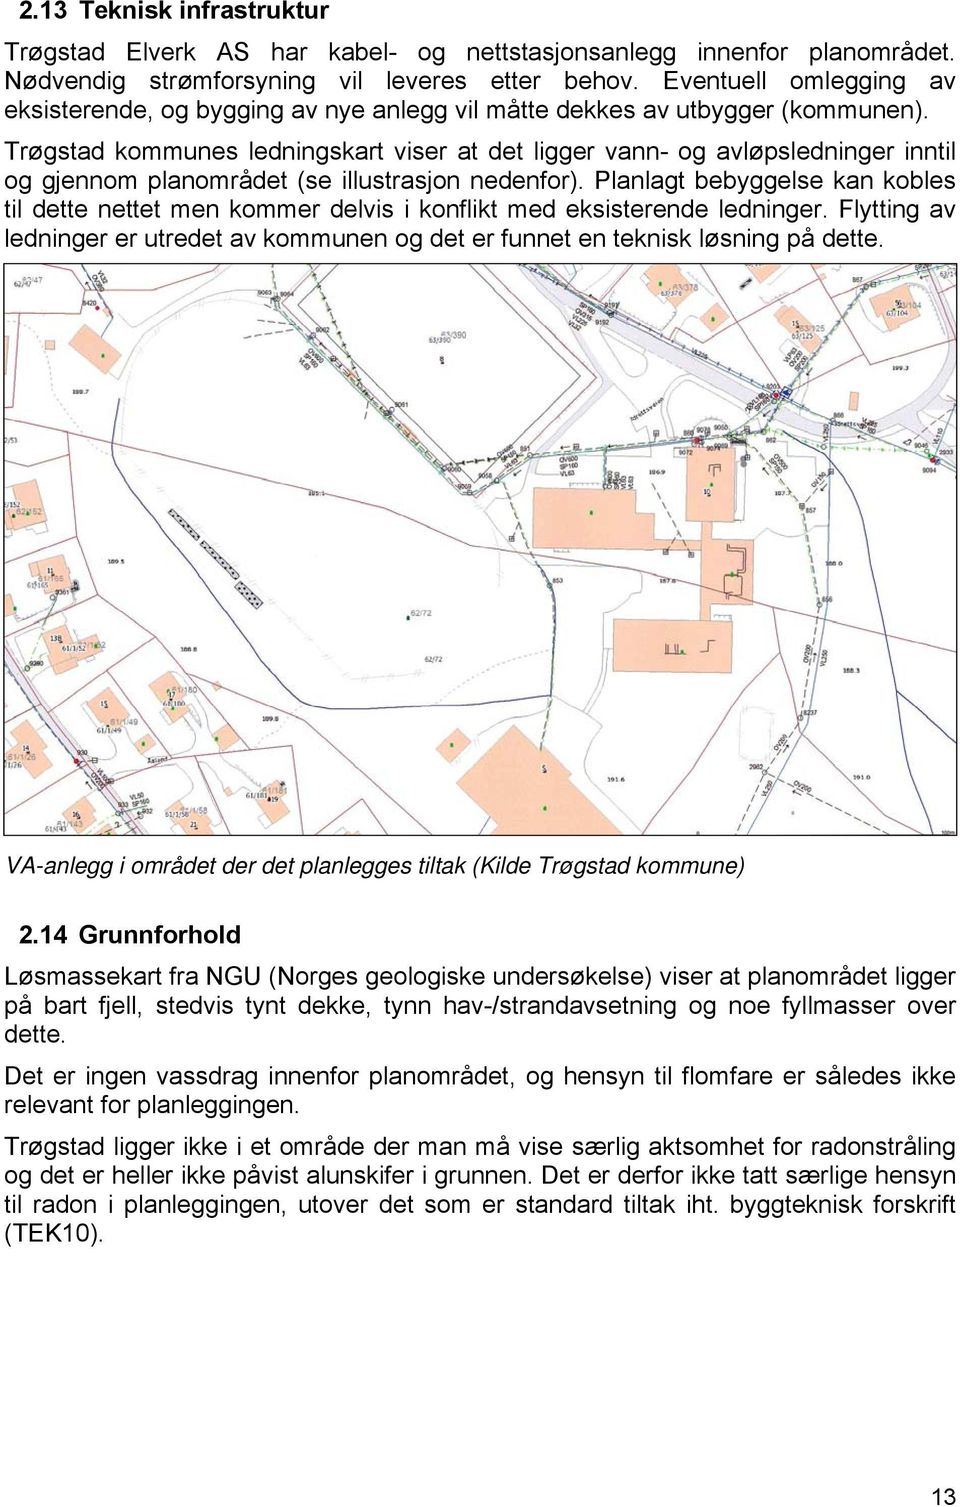 Trøgstad kommunes ledningskart viser at det ligger vann- og avløpsledninger inntil og gjennom planområdet (se illustrasjon nedenfor).